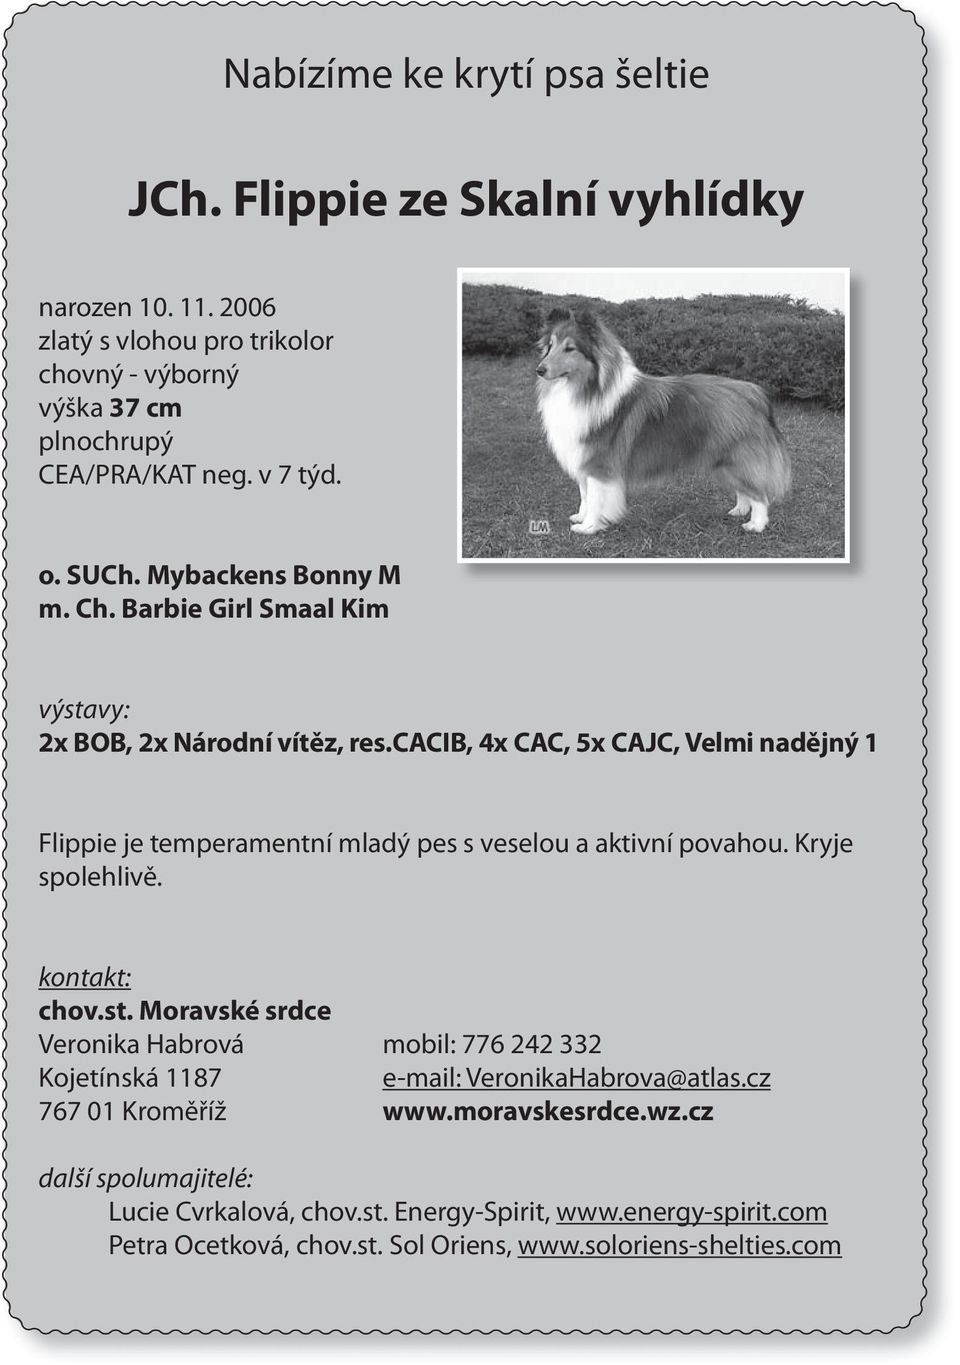 cacib, 4x CAC, 5x CAJC, Velmi nadějný 1 Flippie je temperamentní mladý pes s veselou a aktivní povahou. Kryje spolehlivě. kontakt: chov.st.